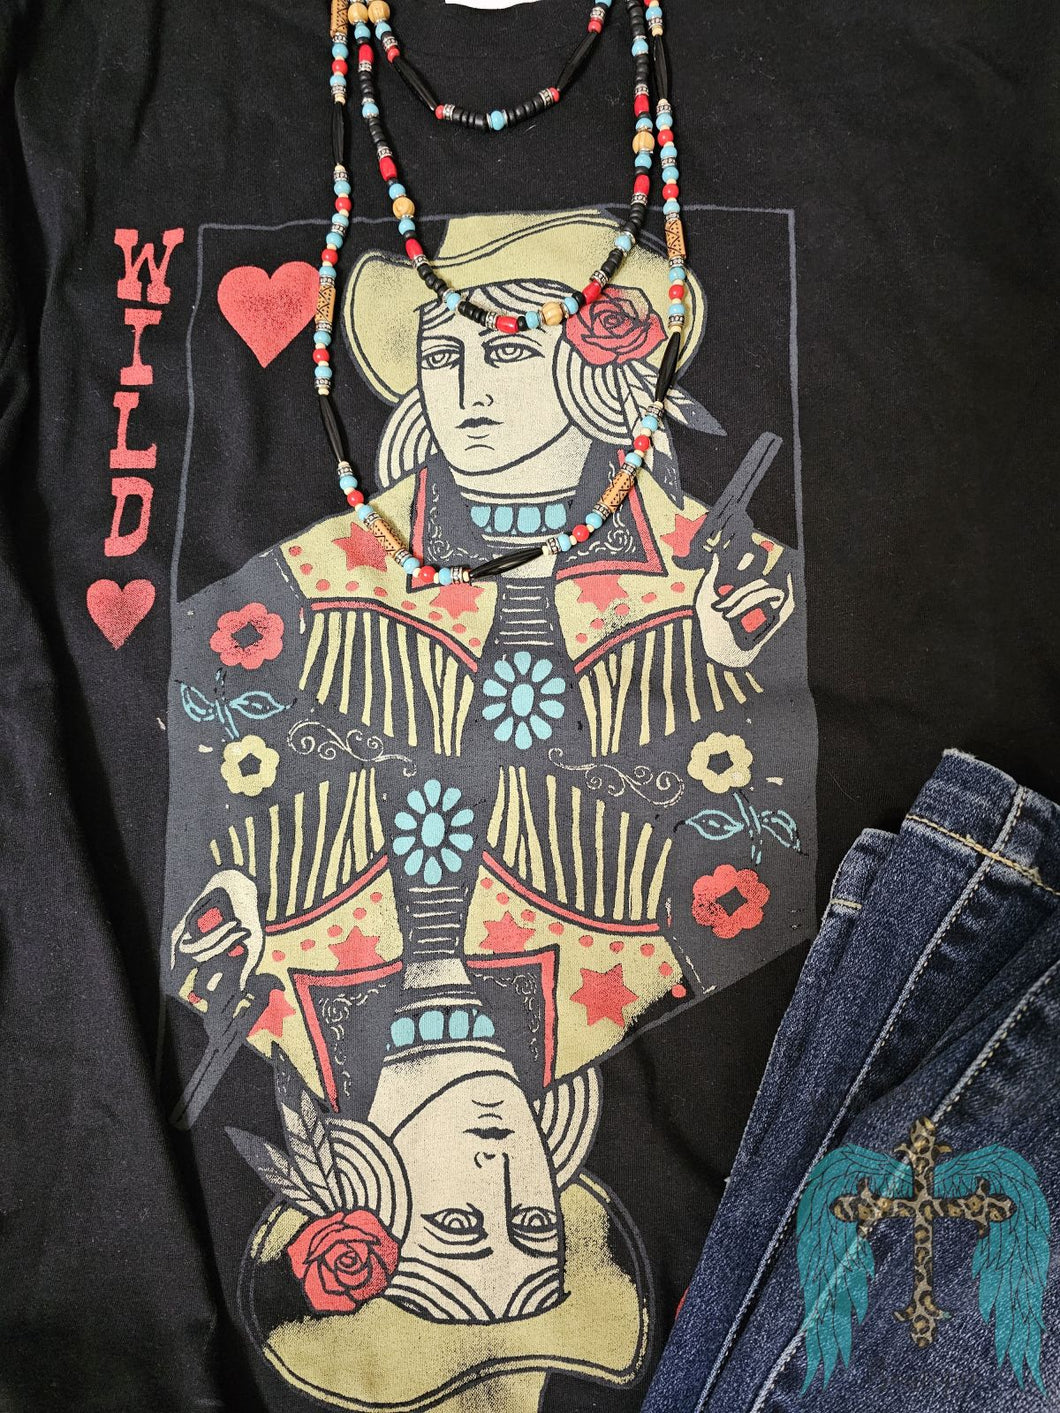 Wild West Queen of Hearts Graphic Tee